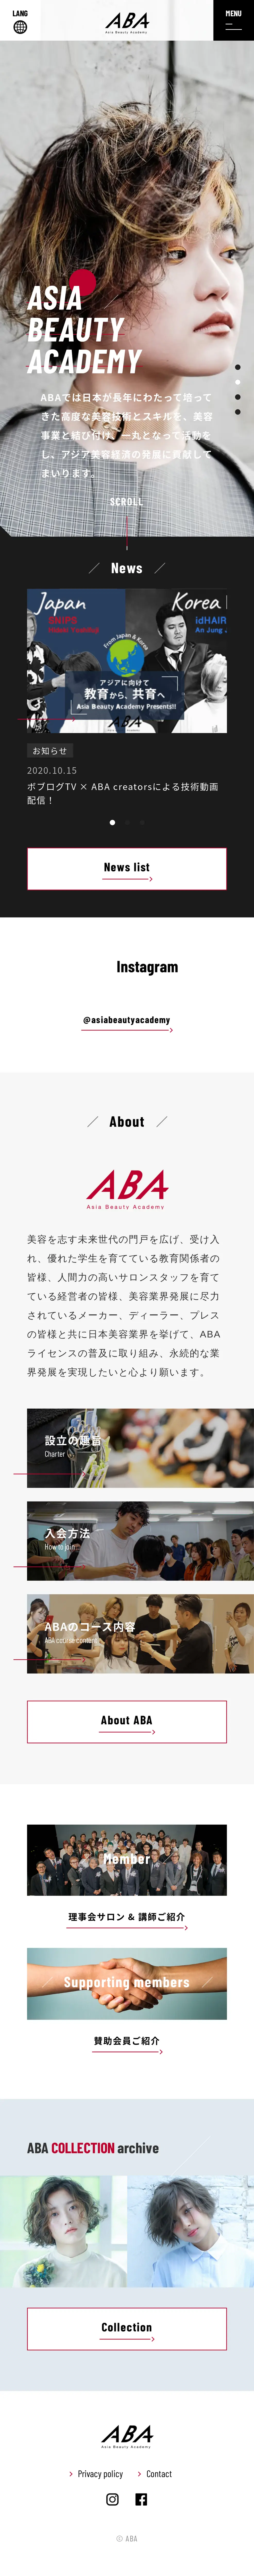 キャプチャ画面 会社名:一般社団法人アジアビューティアカデミープロジェクト名:ABA | Asia Beauty Academy 画面名:A デバイス名:SPカテゴリ:教育・学校タグ:SP